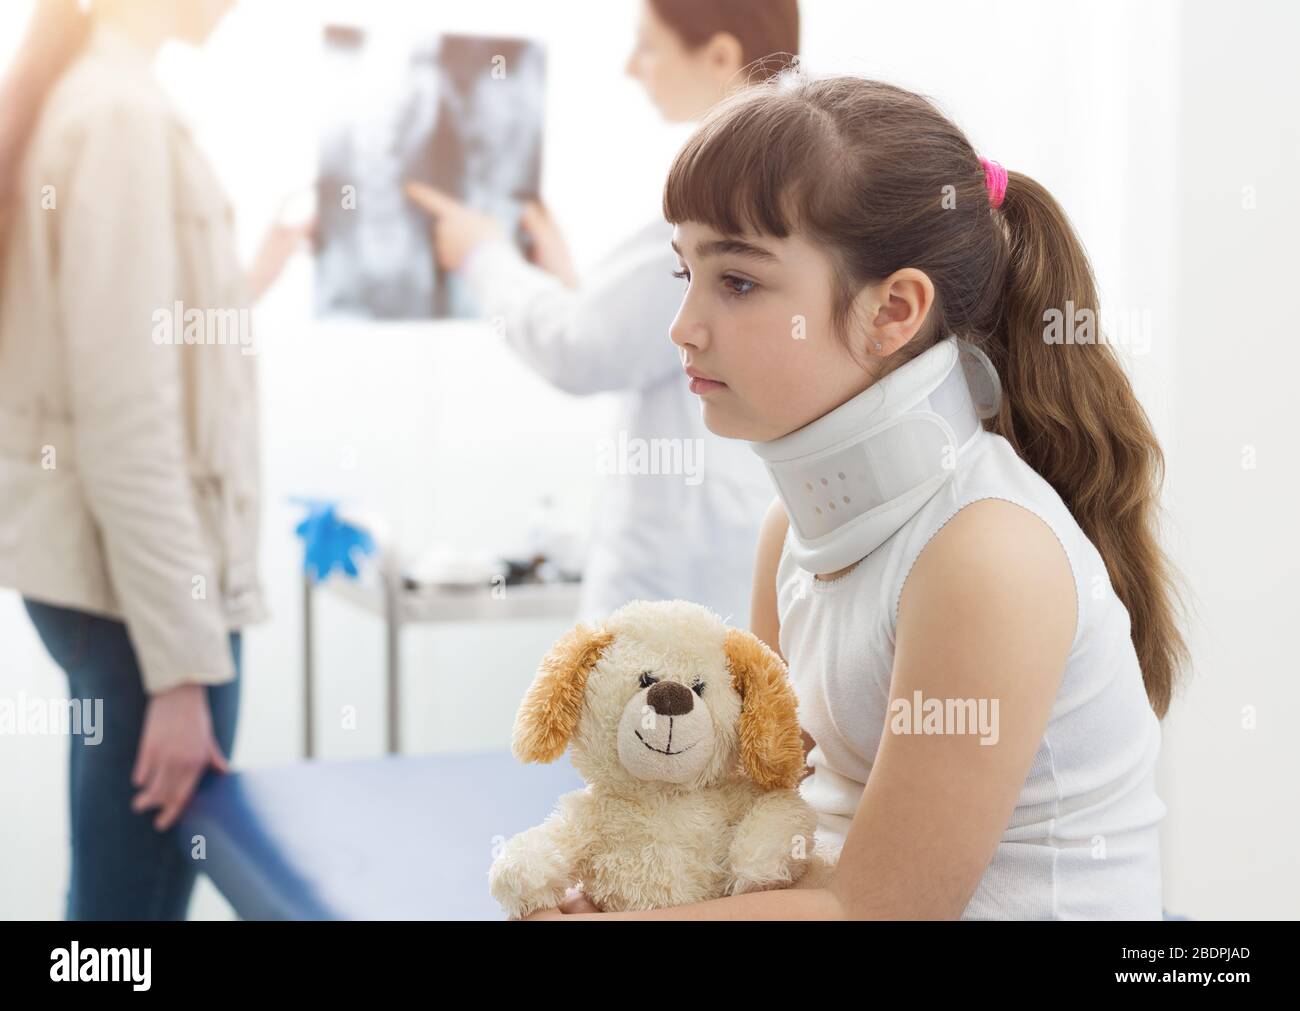 Mädchen mit Halsband in der Arztpraxis, sie hält ihren Teddybären, der Radiologe spricht im Hintergrund mit ihrer Mutter Stockfoto